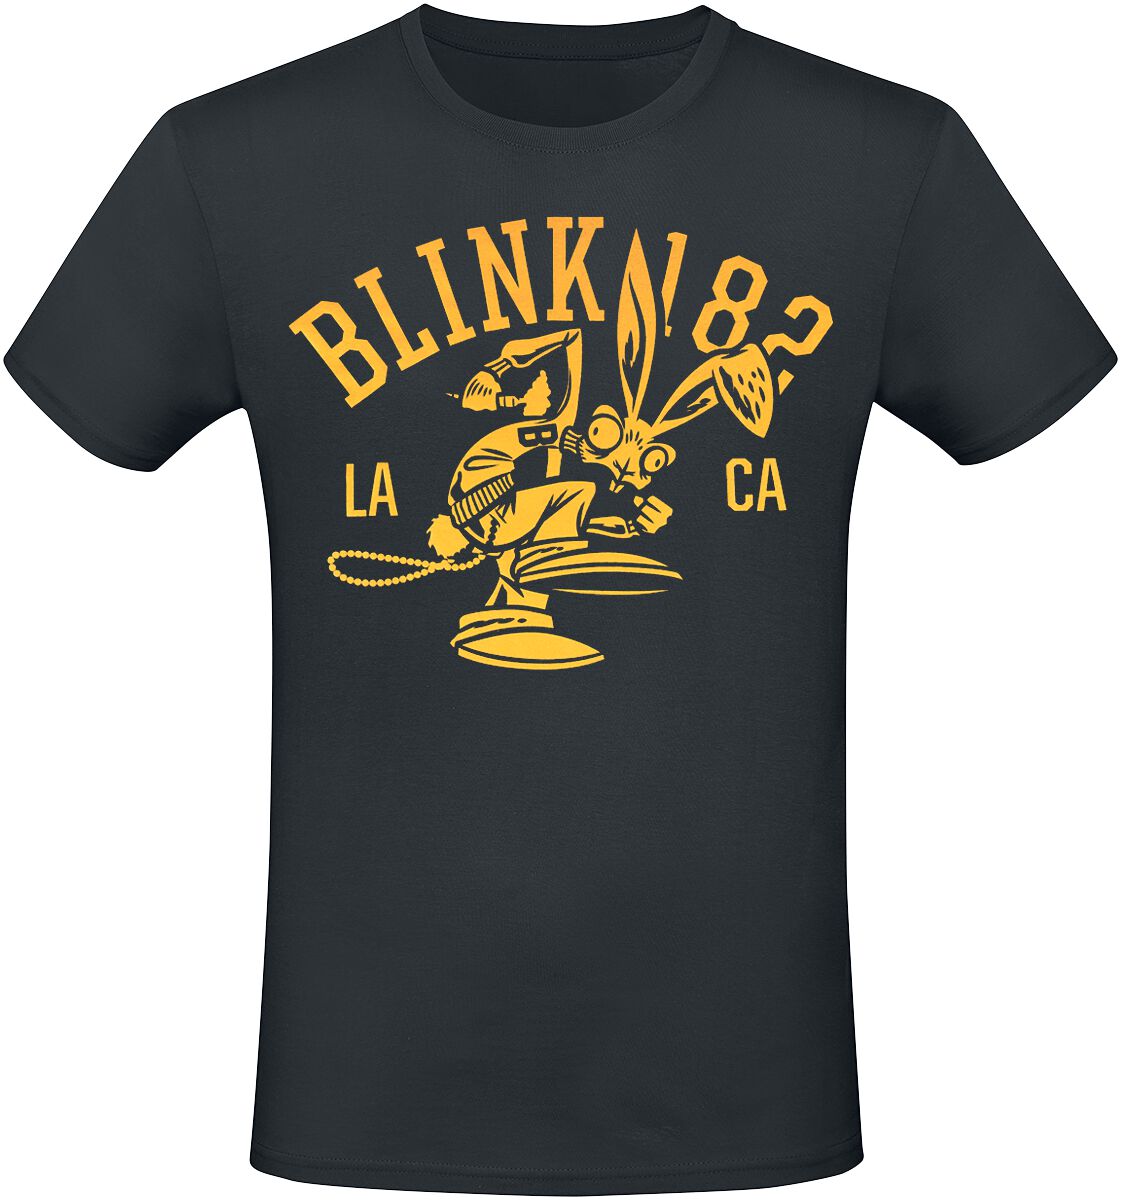 Blink-182 T-Shirt - Mascot - S bis 3XL - für Männer - Größe S - schwarz  - Lizenziertes Merchandise!